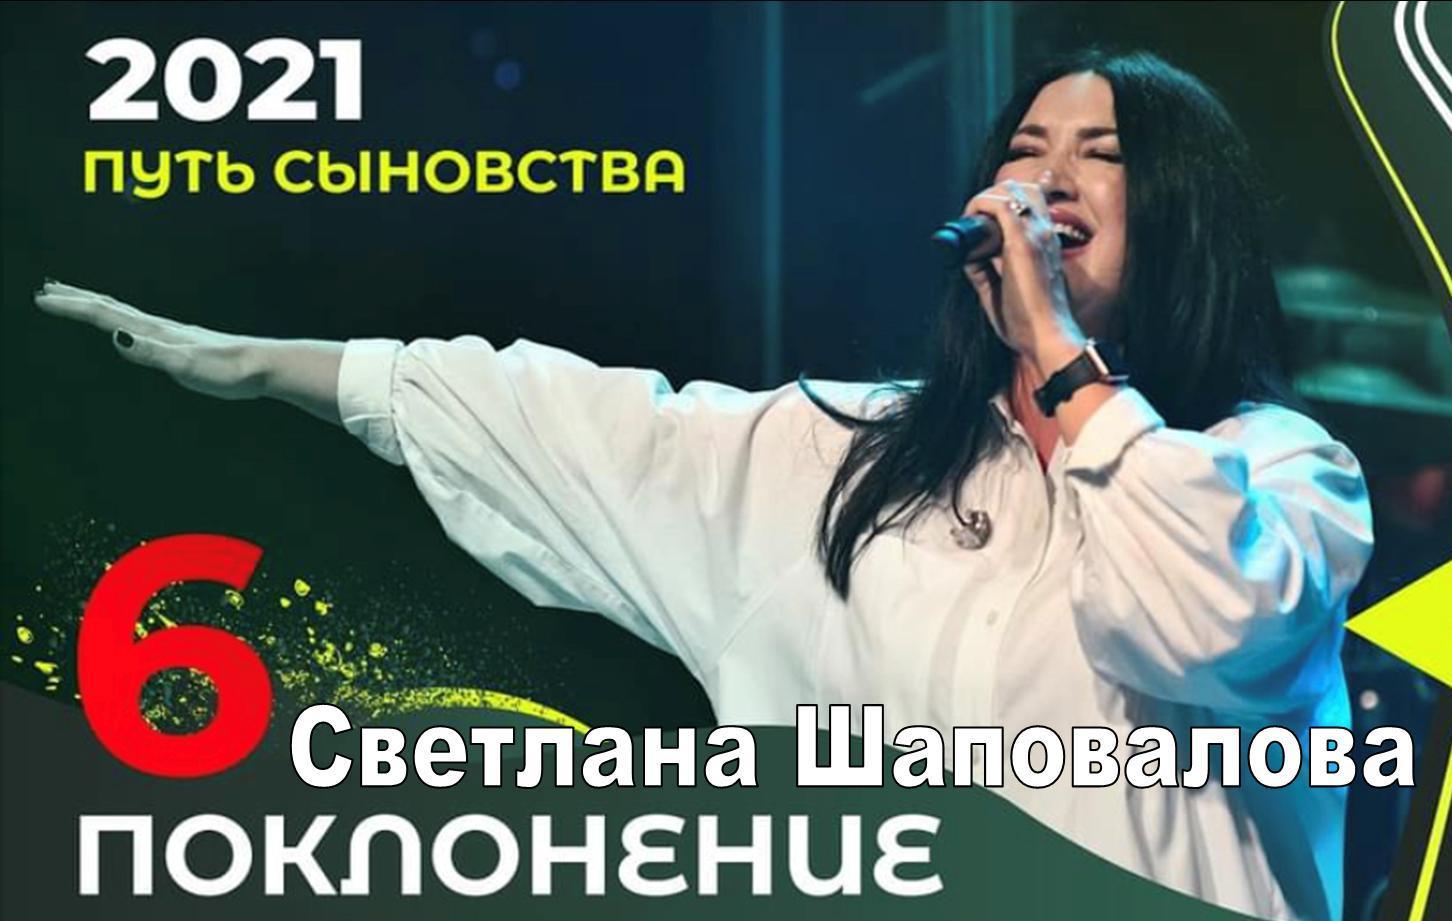 Светлана Шаповалова (Поклонение) Конференция «Путь сыновства» Служение 6 (Киев 2021)